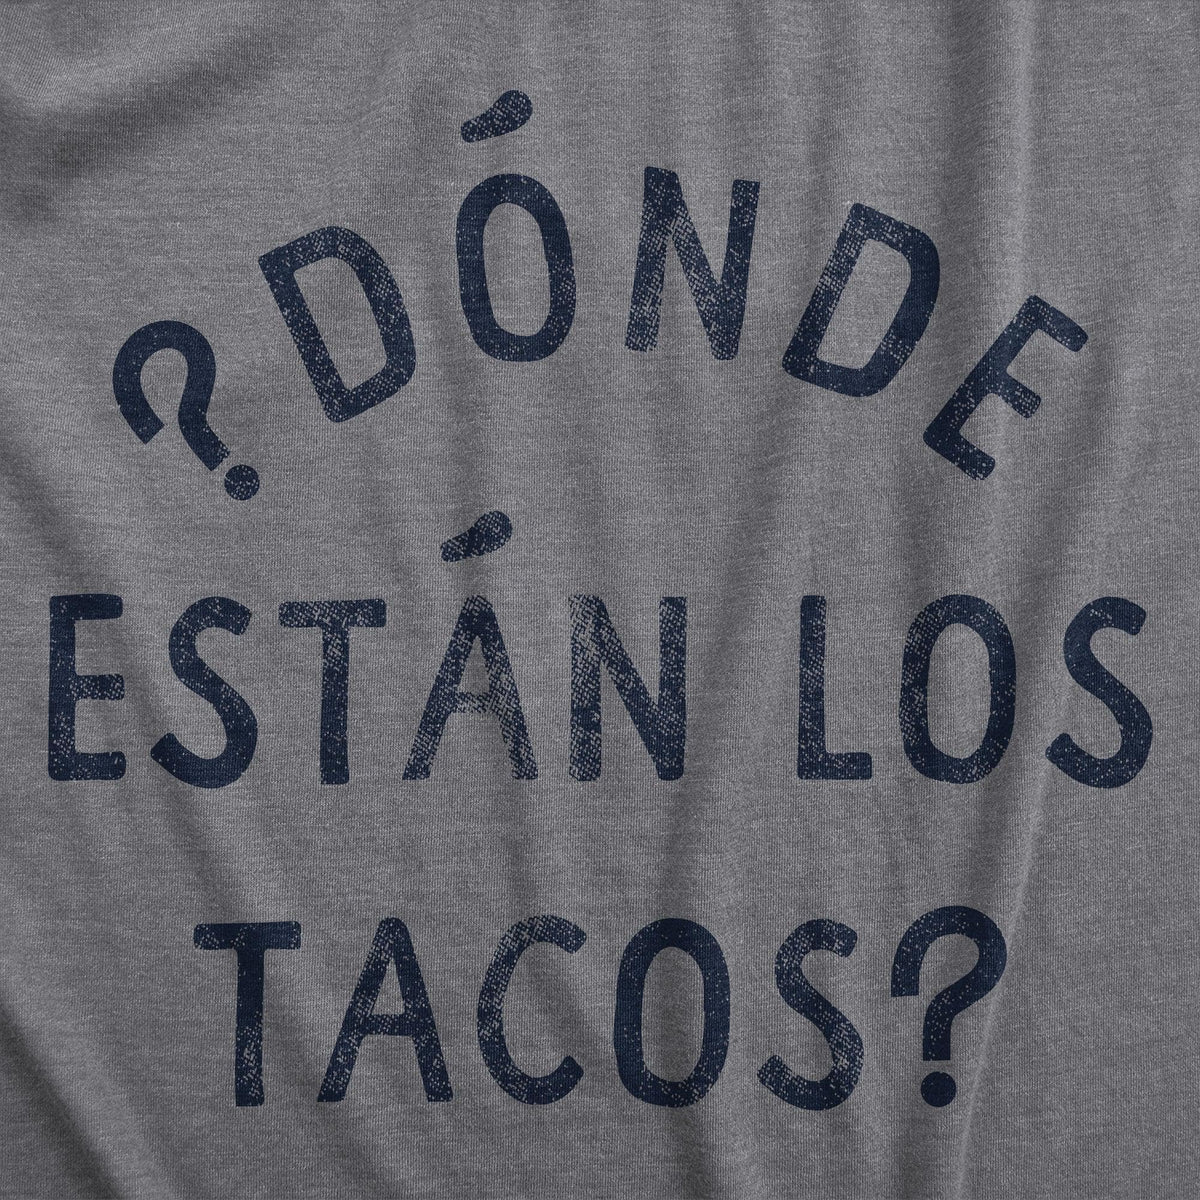 Donde Estan Los Tacos Women&#39;s Tshirt  -  Crazy Dog T-Shirts